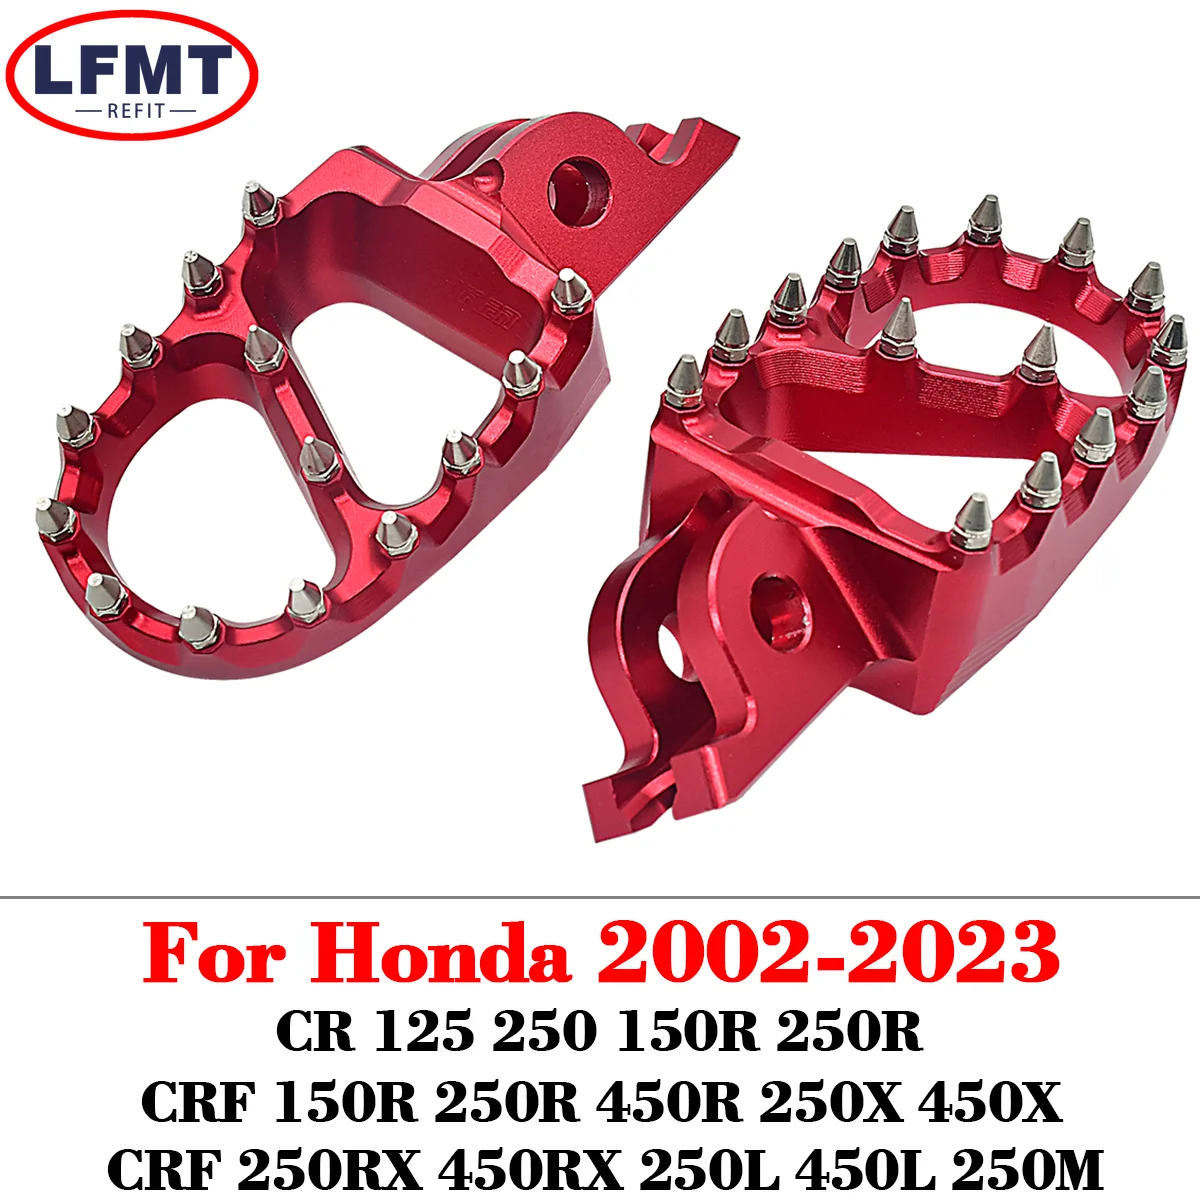 For HONDA CR 125 250 150R CR250R CRF 150R 250R 450R 250 450 X RX L M 200... - $74.75